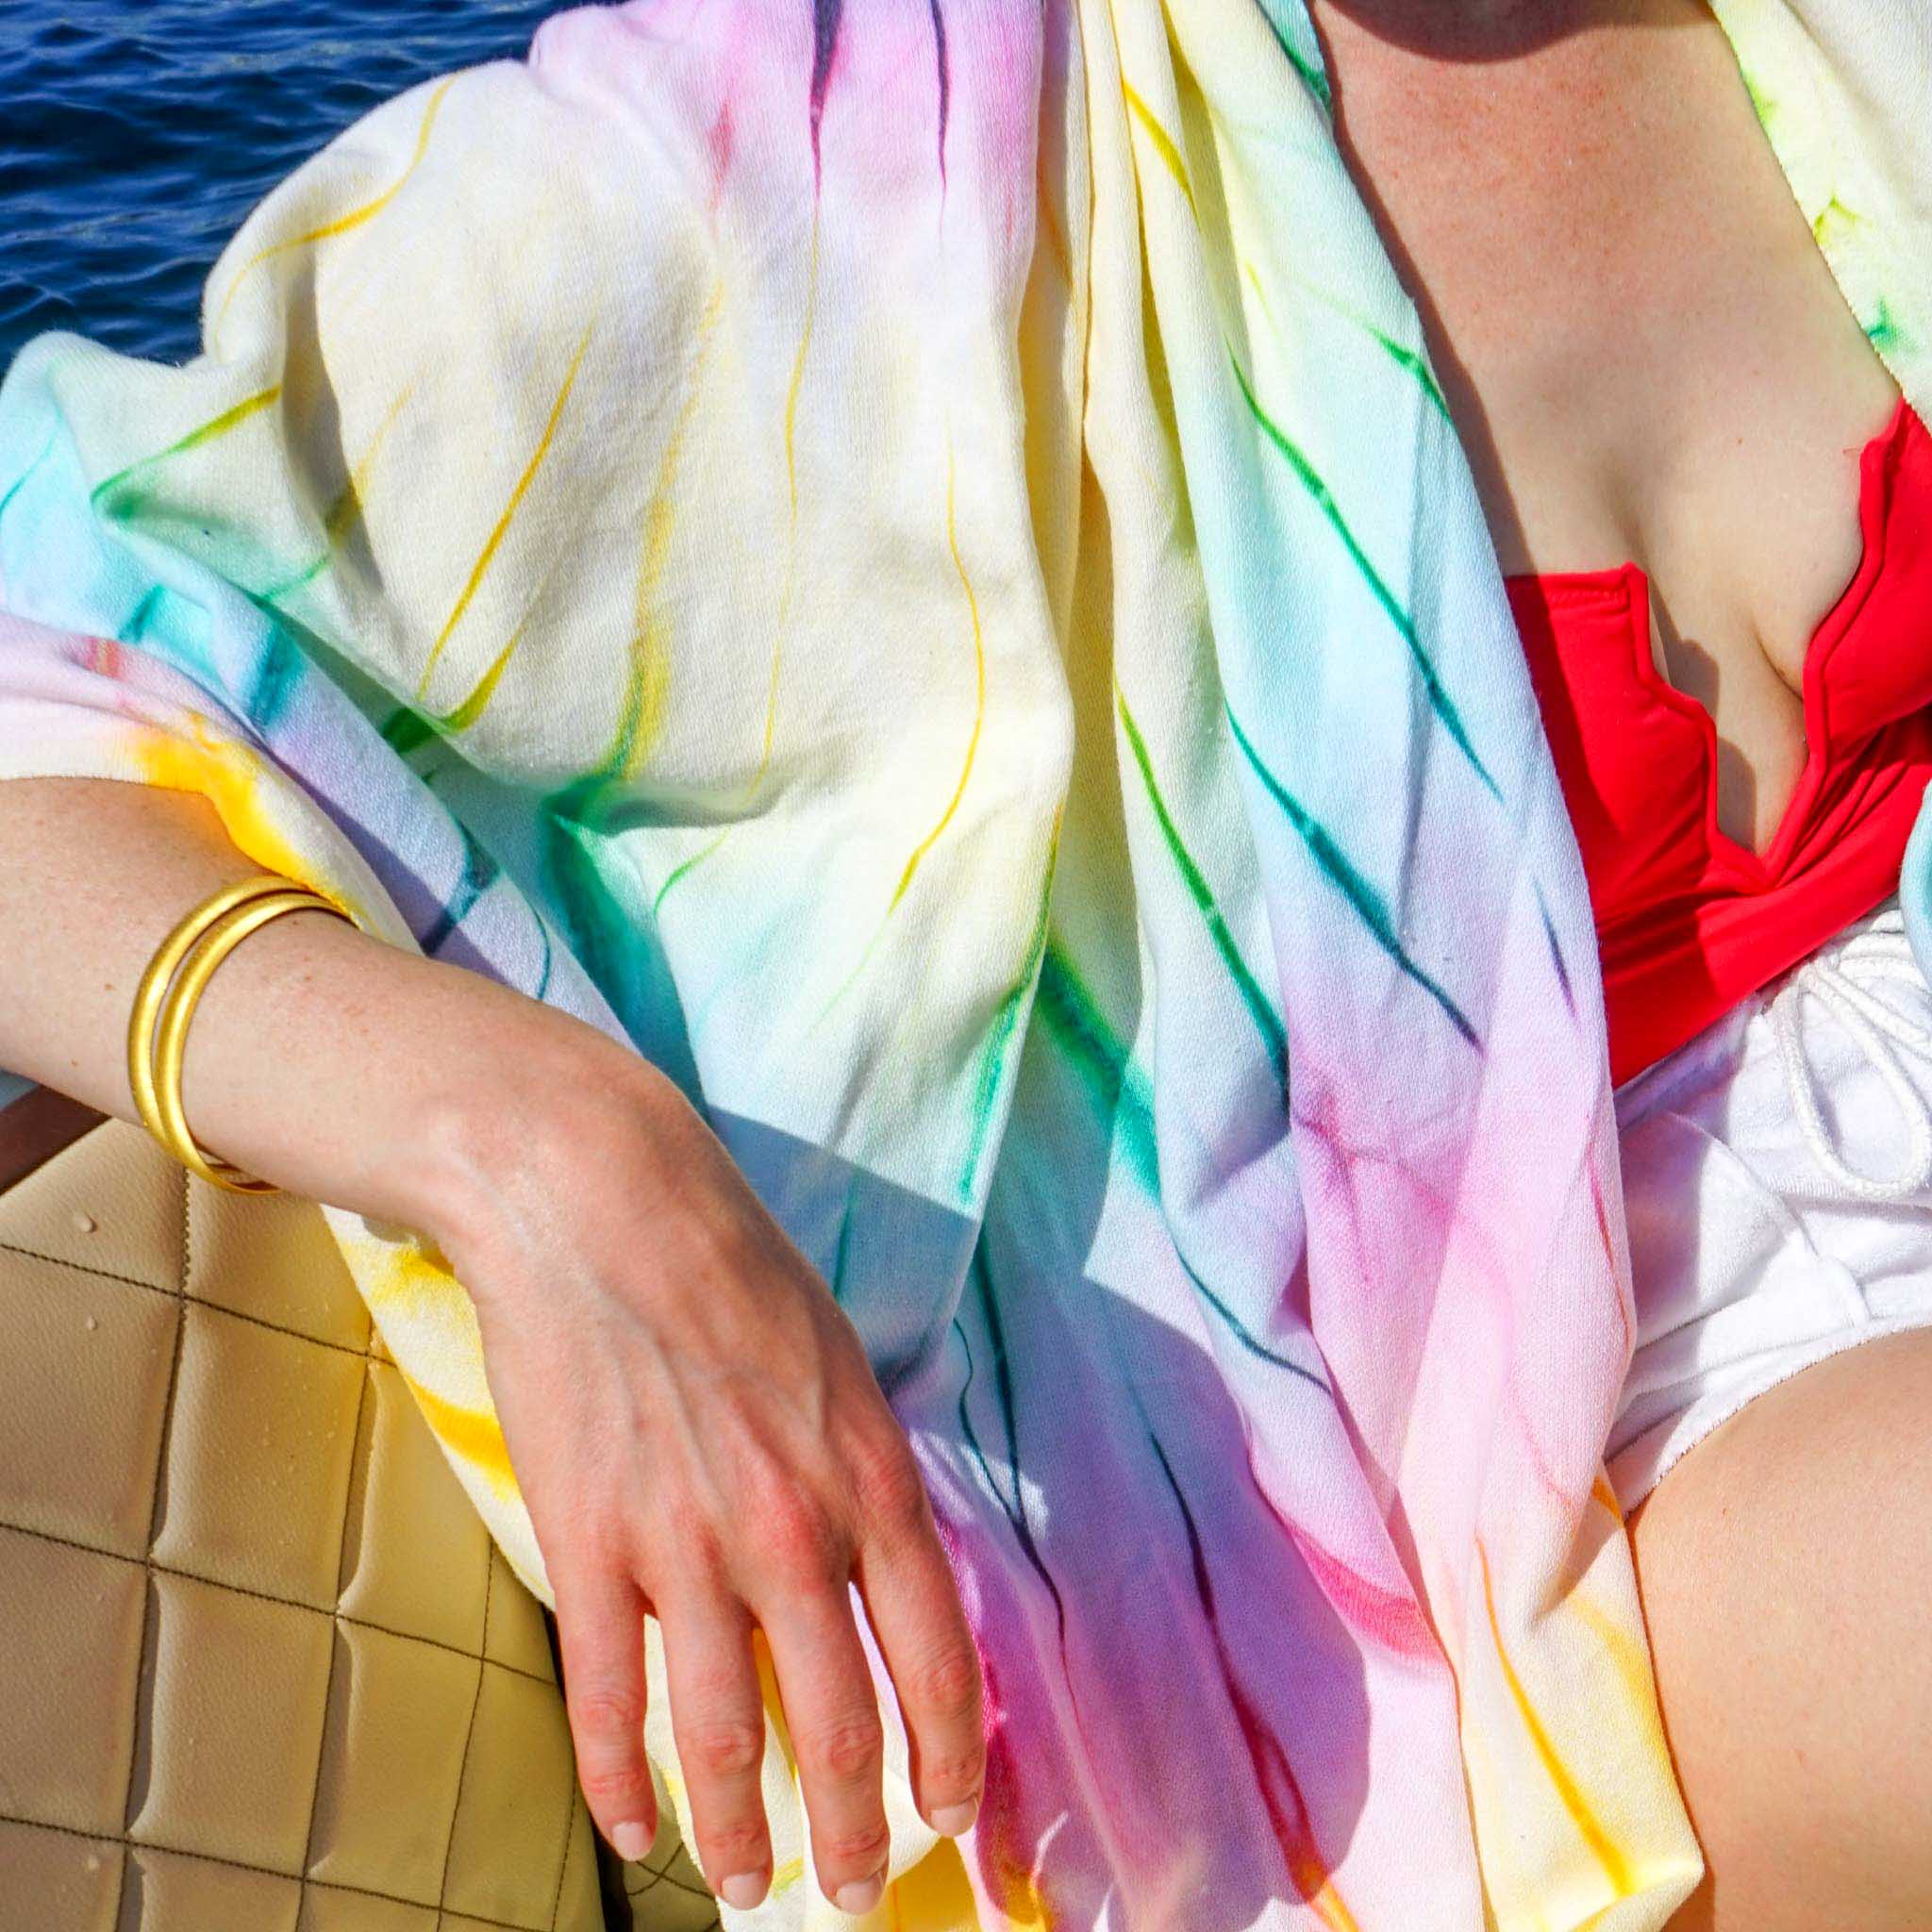 Coachella Towel Multicolour Tie Dye - HAMAMINGO